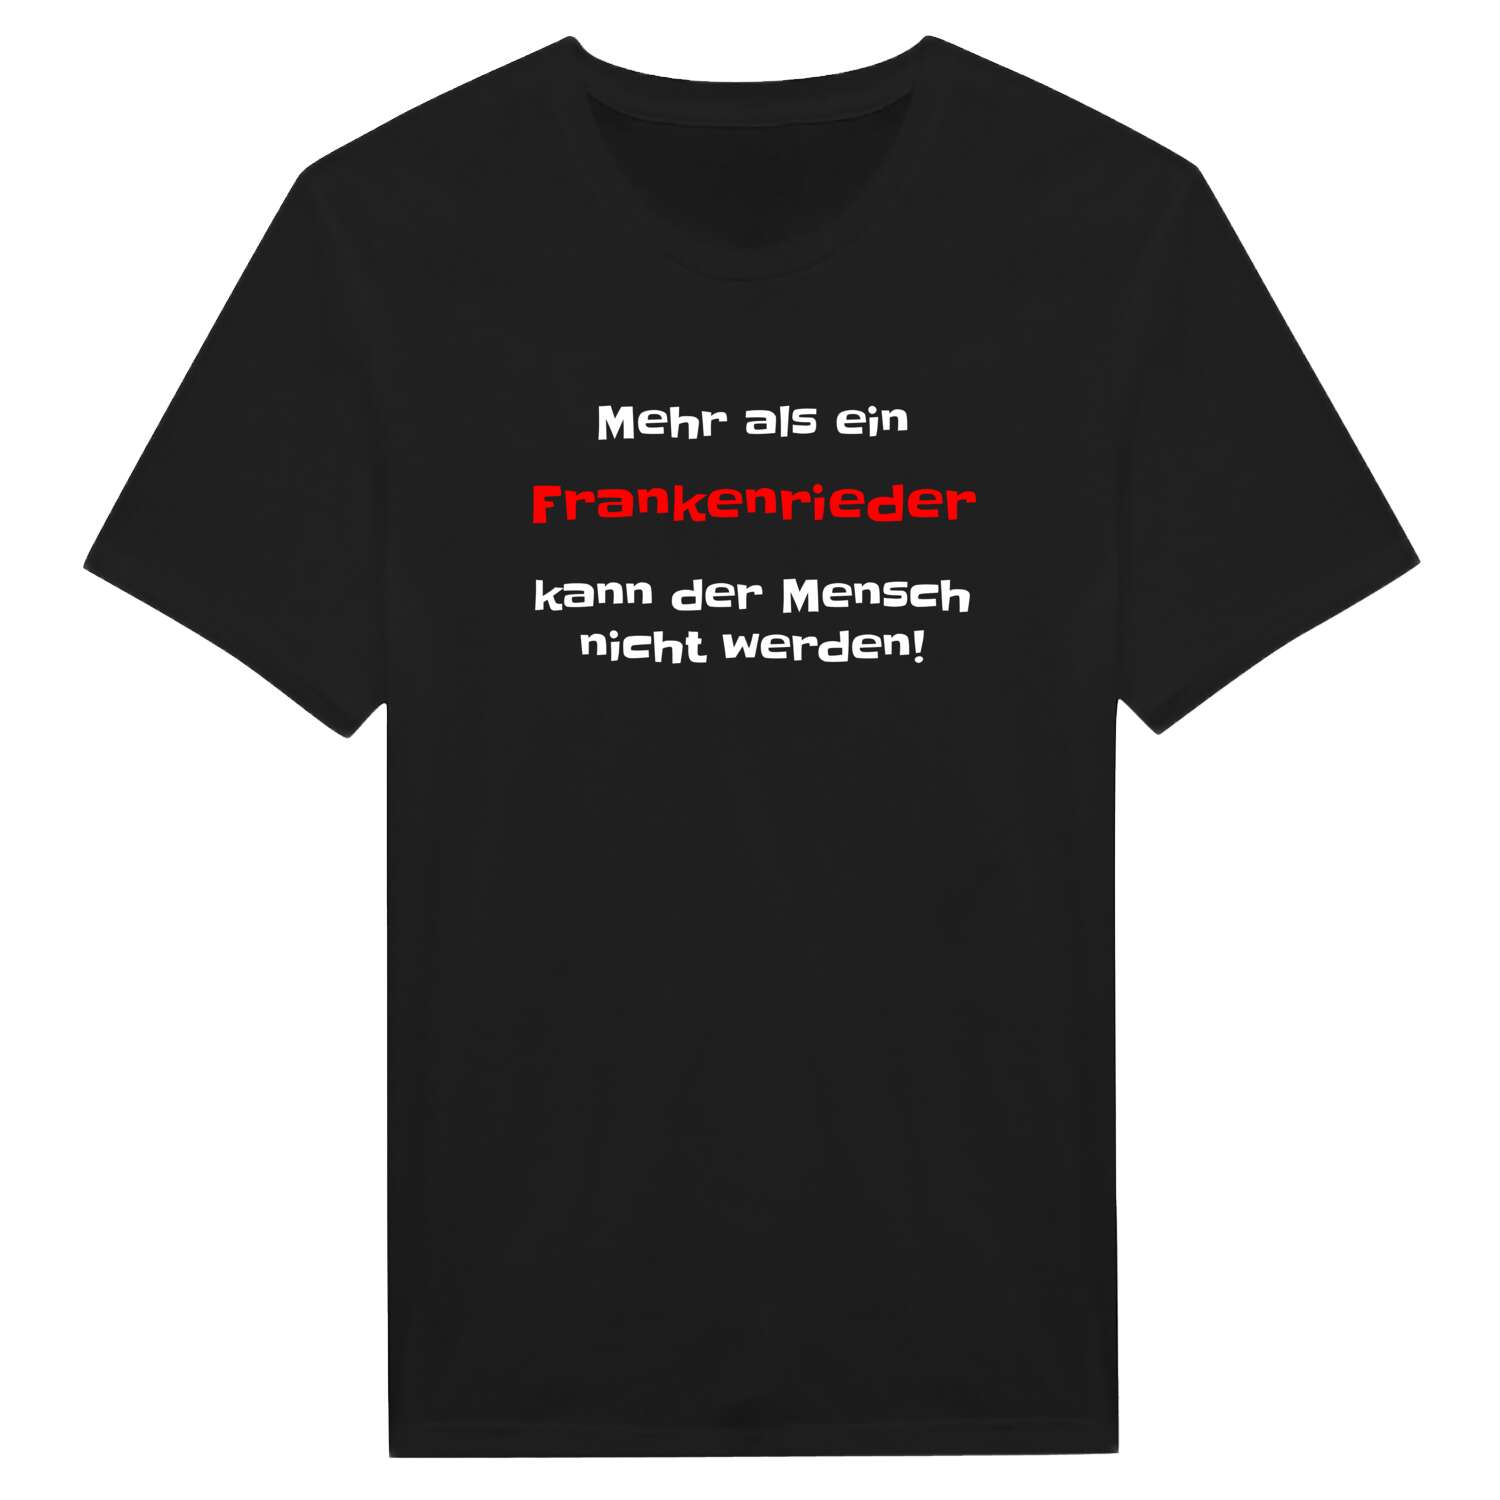 Frankenried T-Shirt »Mehr als ein«